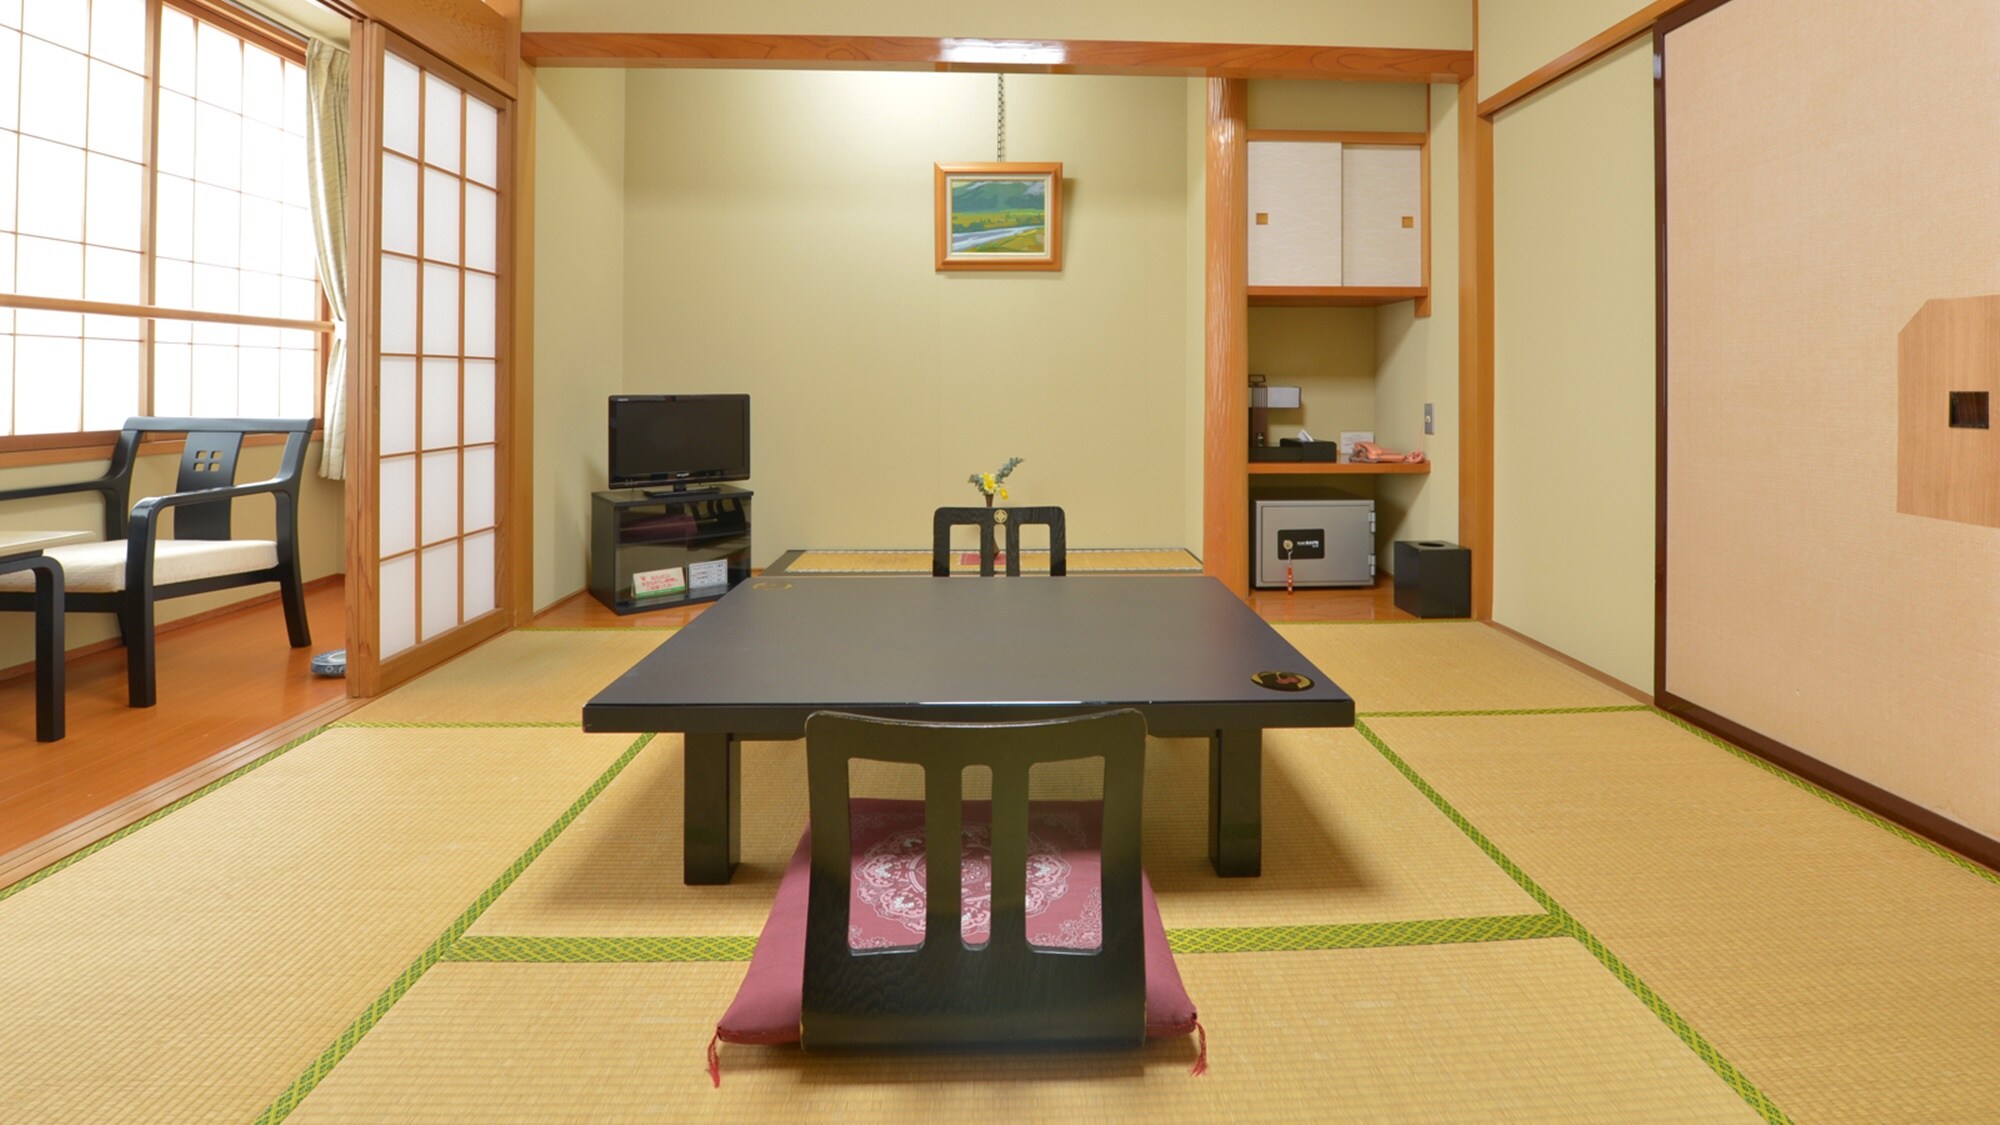 * [ตัวอย่างห้องสไตล์ญี่ปุ่นที่มี 8 เสื่อทาทามิ] โปรดใช้เวลาที่ผ่อนคลายและเงียบสงบ